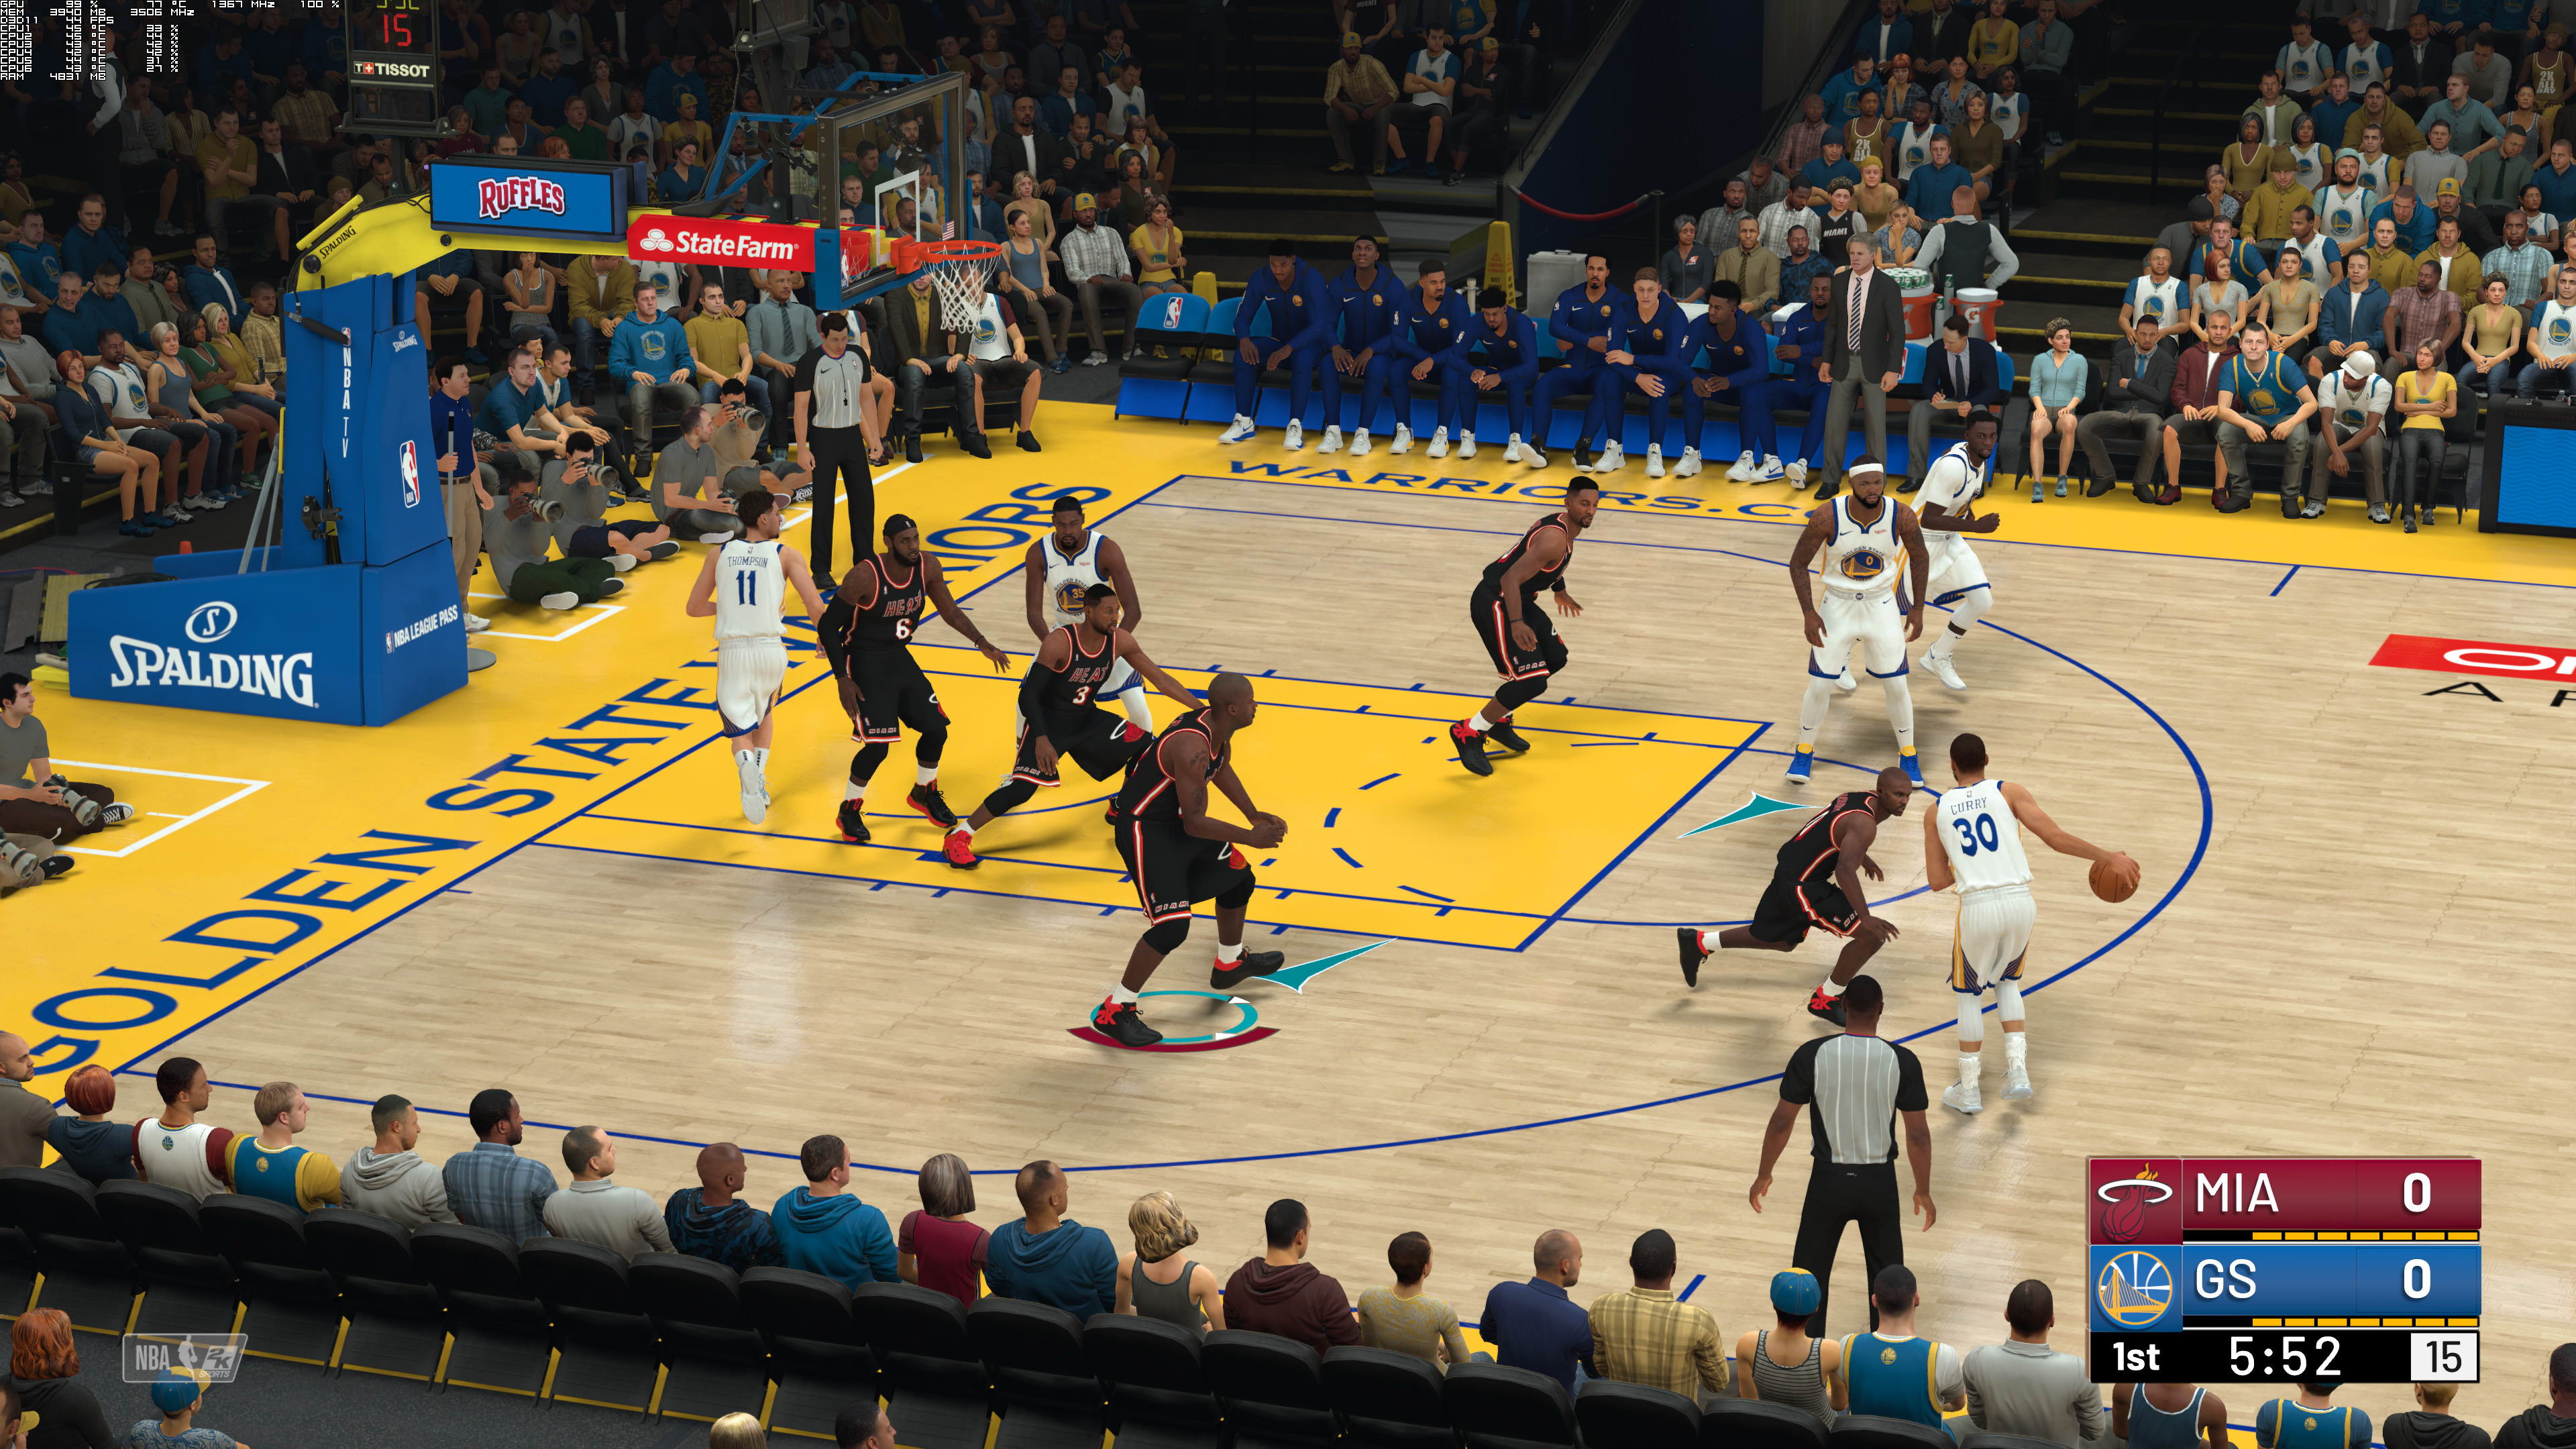 《NBA 2K19》4K高清截圖 這遊戲畫面你覺得進步了麽